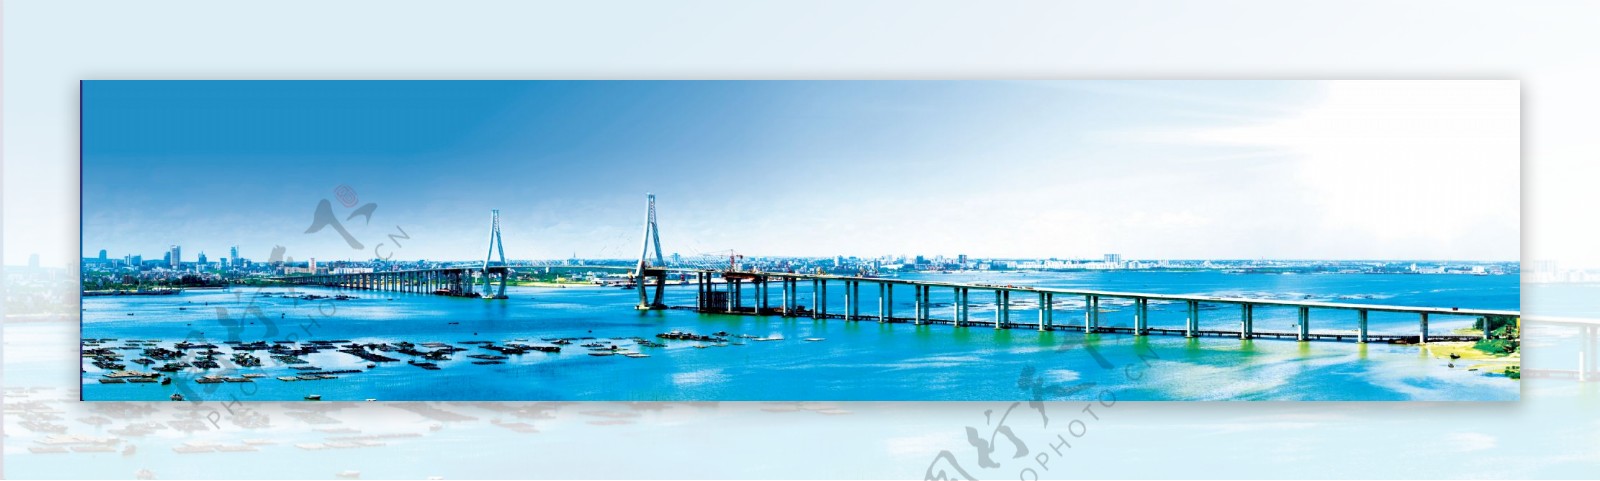 湛江海湾大桥图片